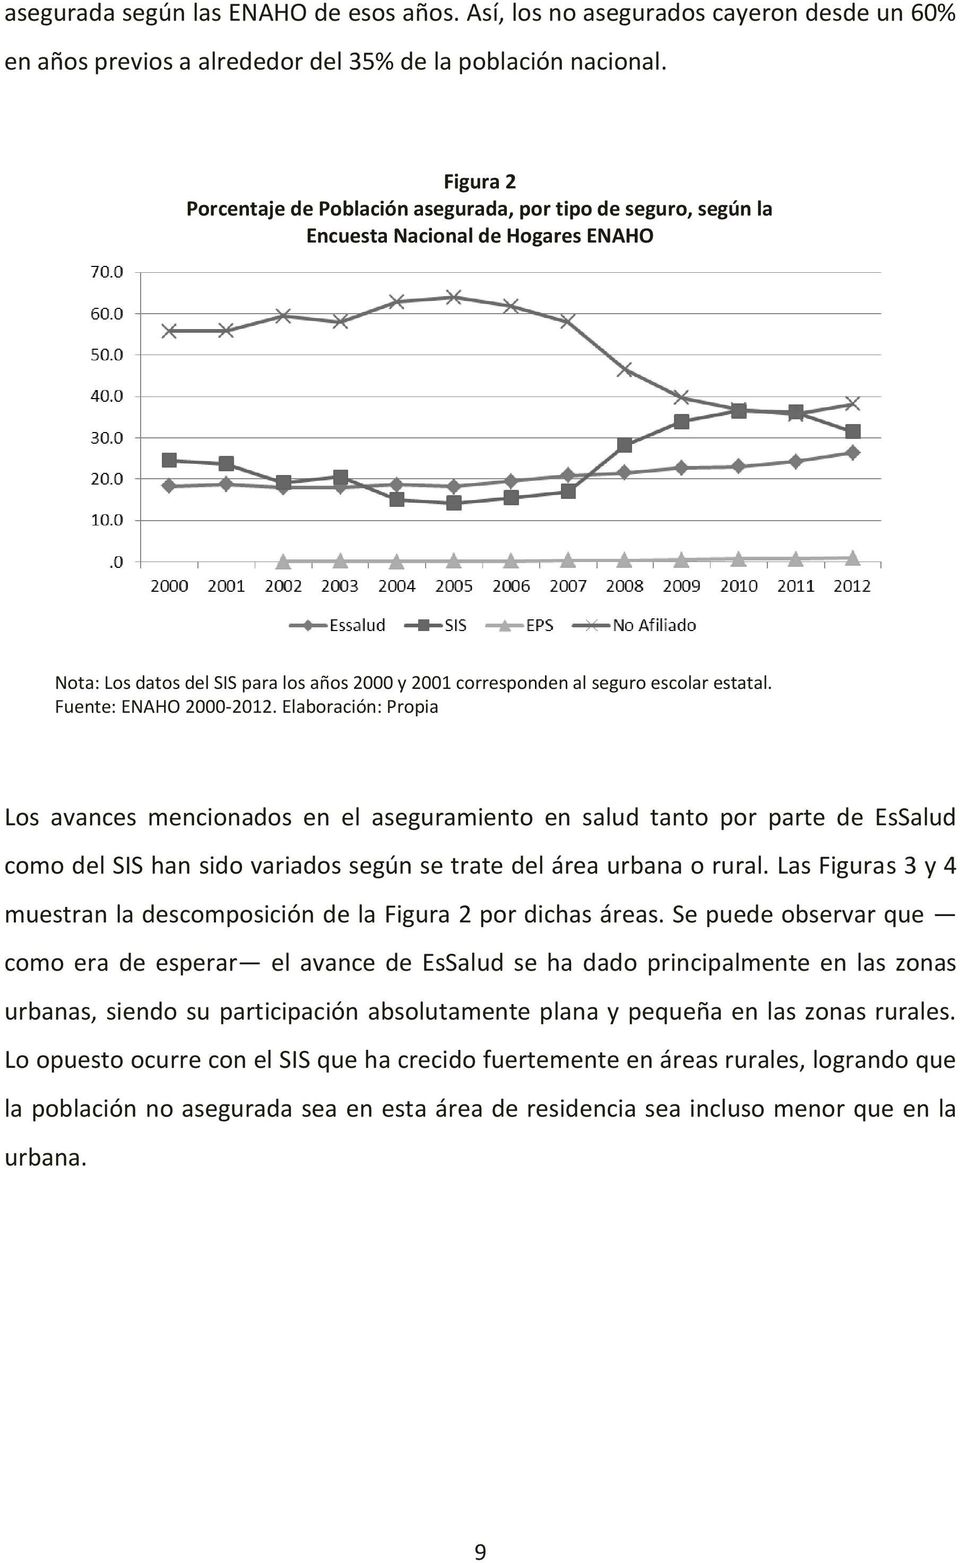 Fuente: ENAHO 2000-2012. Elaboración: Propia Los avances mencionados en el aseguramiento en salud tanto por parte de EsSalud como del SIS han sido variados según se trate del área urbana o rural.